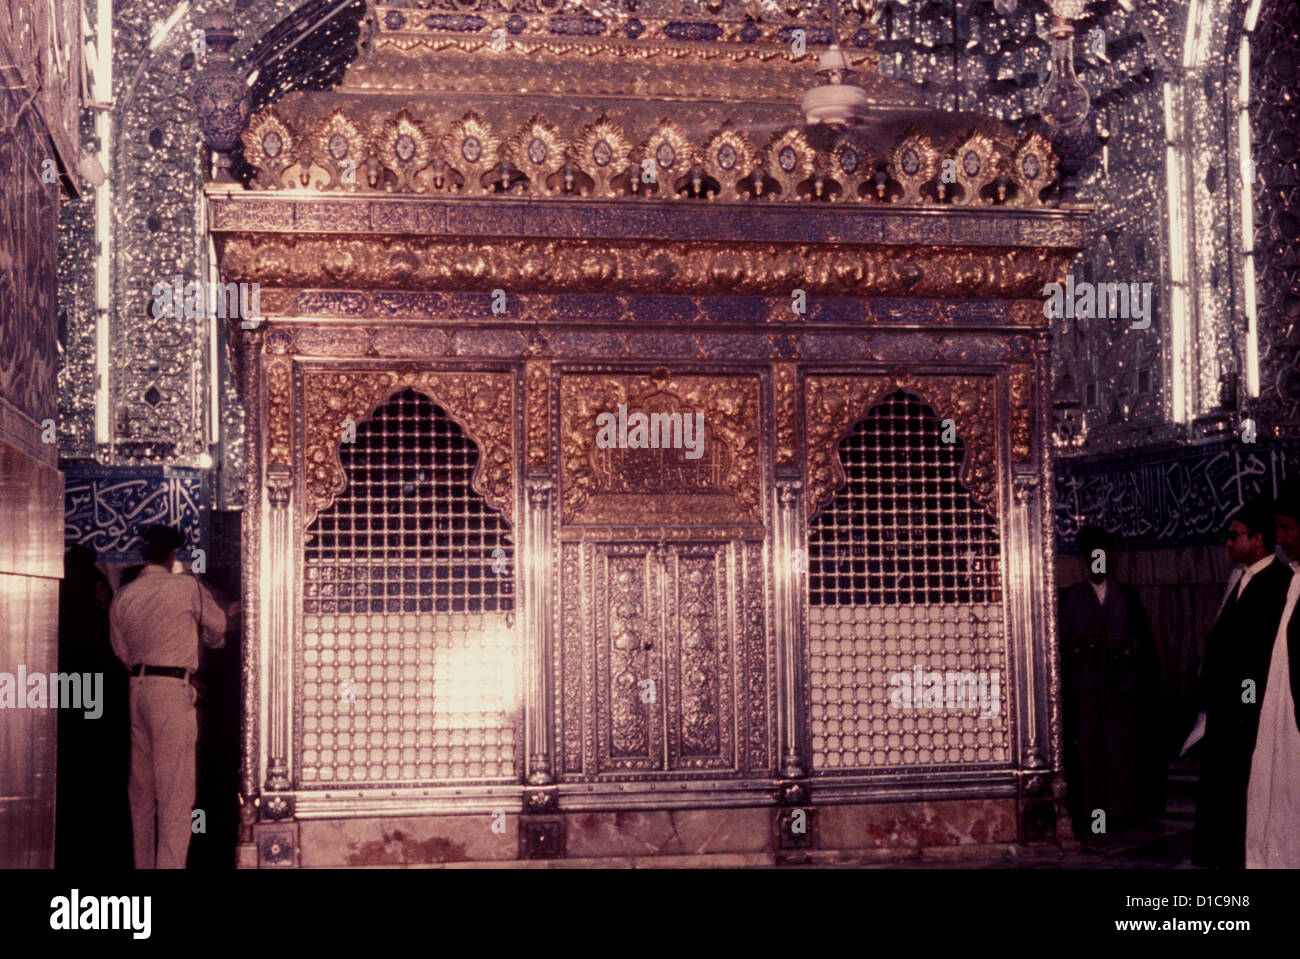 La zahria du sanctuaire de l'Imam Hussein, Shi'te martyrisé à Karbala en Mésopotamie (aujourd'hui Irak) 680CE Banque D'Images